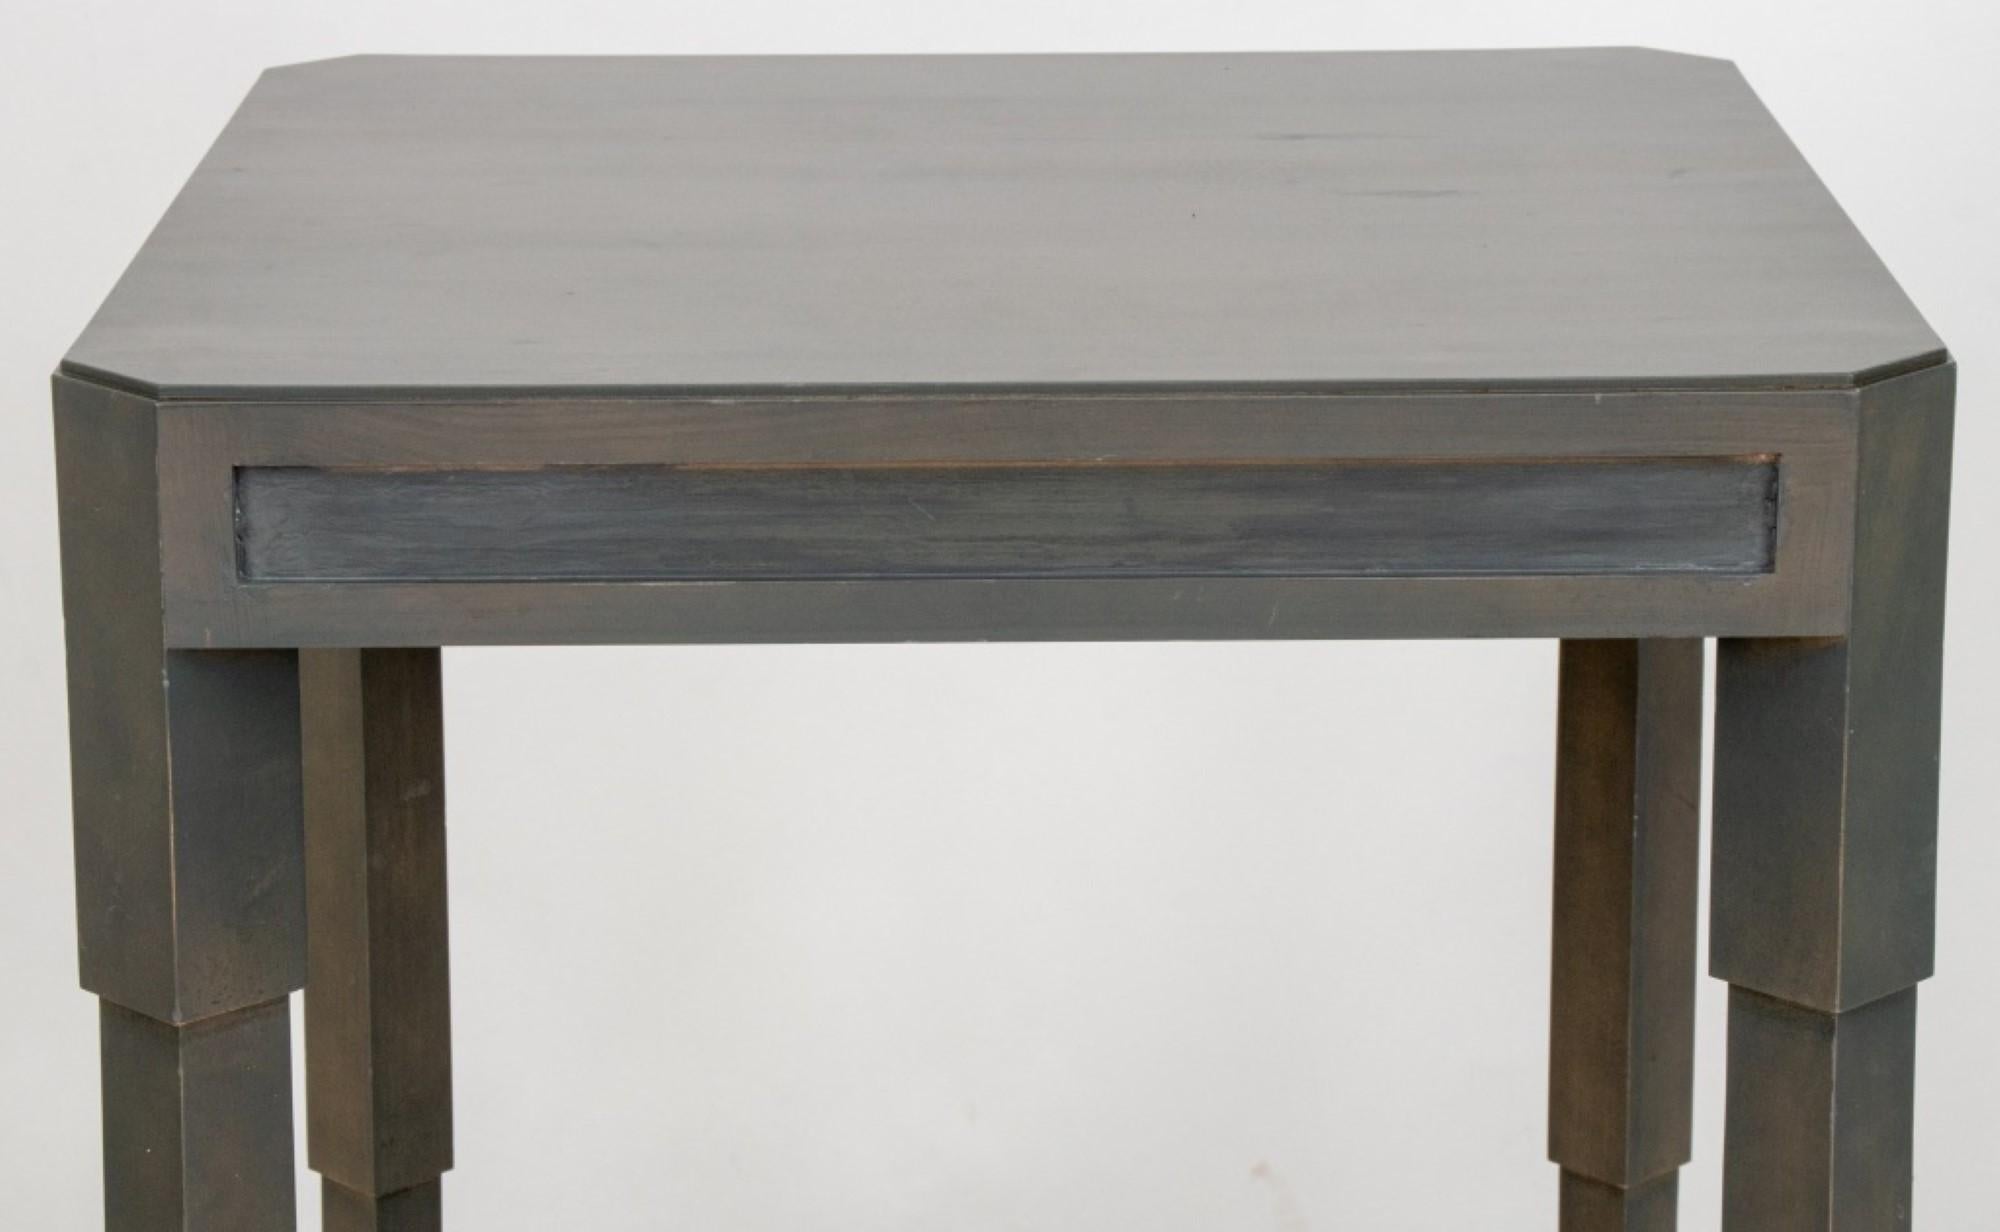 Table moderne de style Art Déco peinte en gris.

Concessionnaire : S138XX